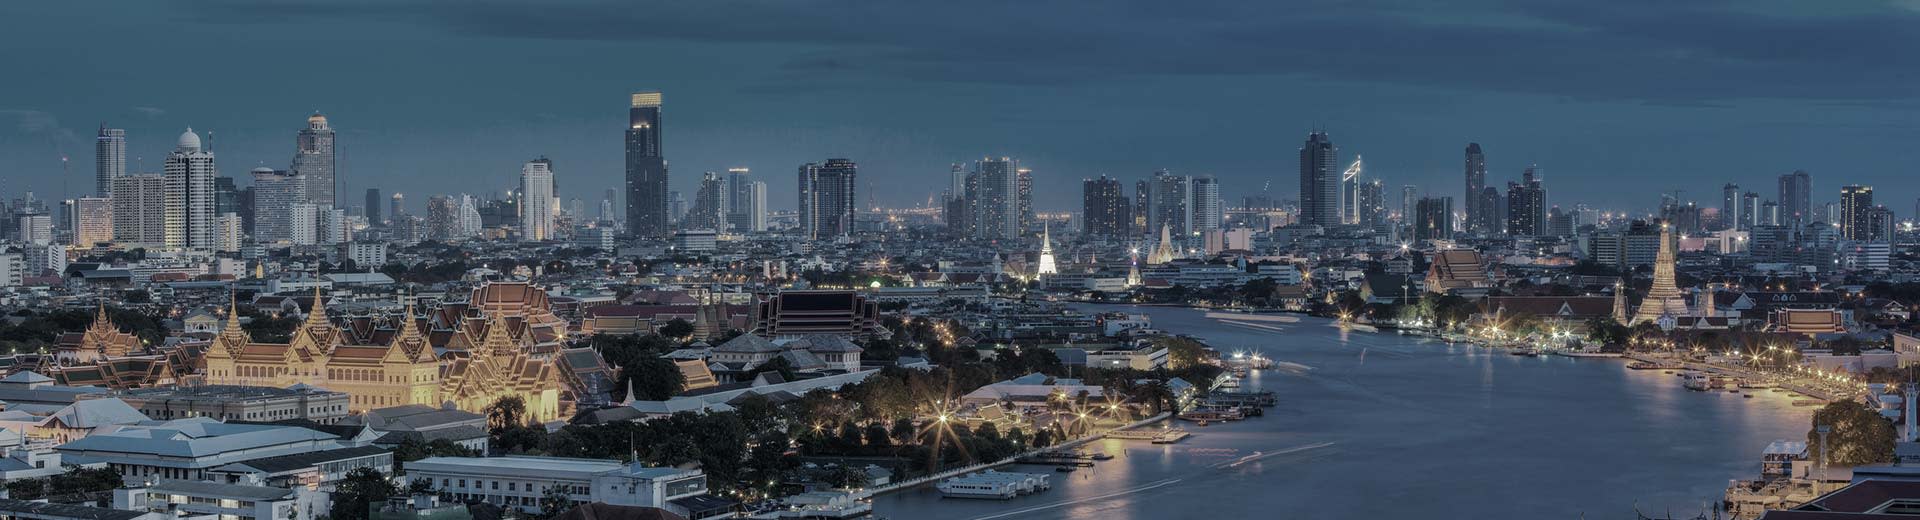 晴朗傍晚的曼谷天际线与城市灯光交相辉映。